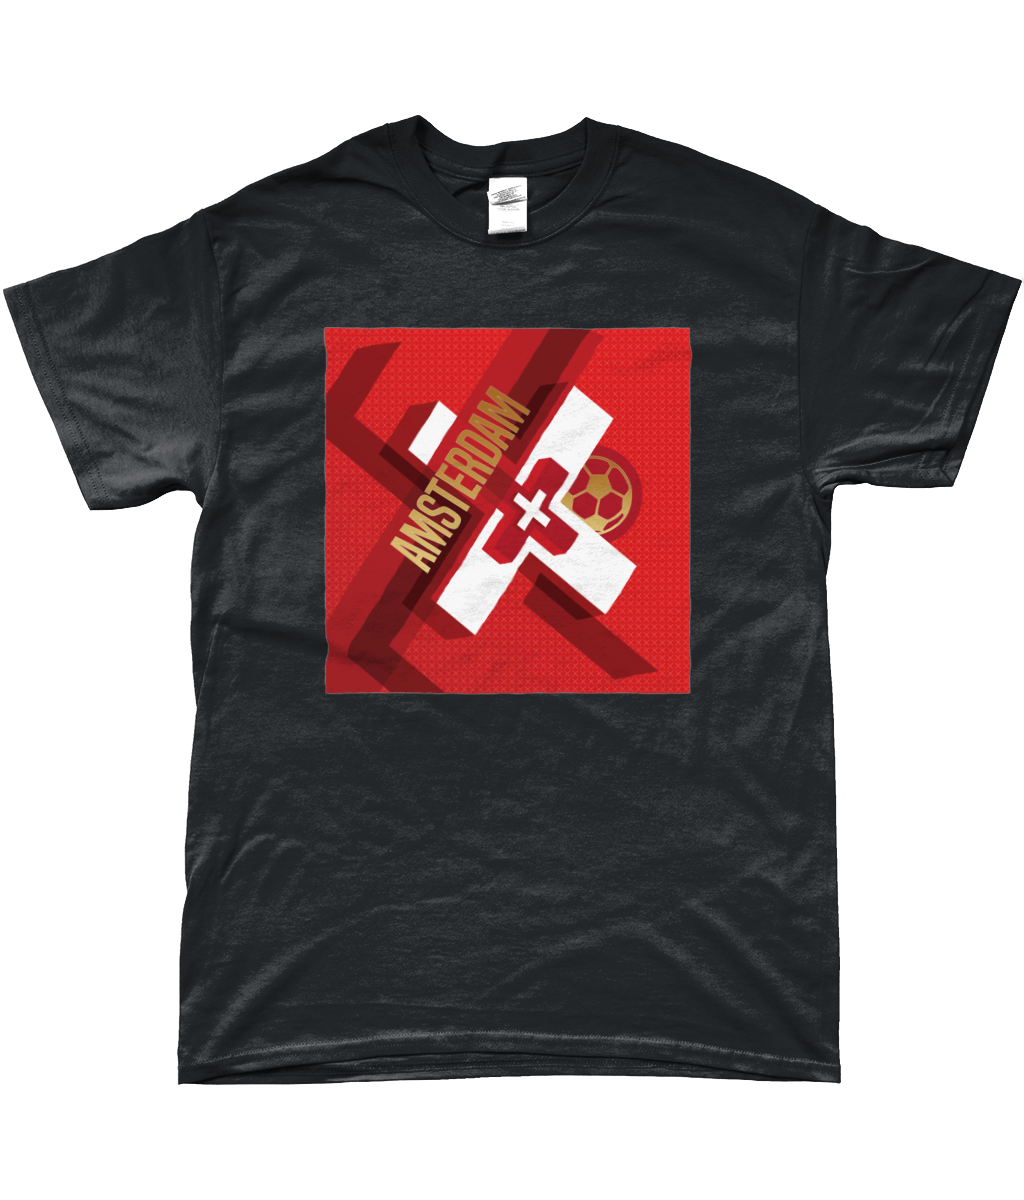 Ajax - Amsterdam XXX T-shirt